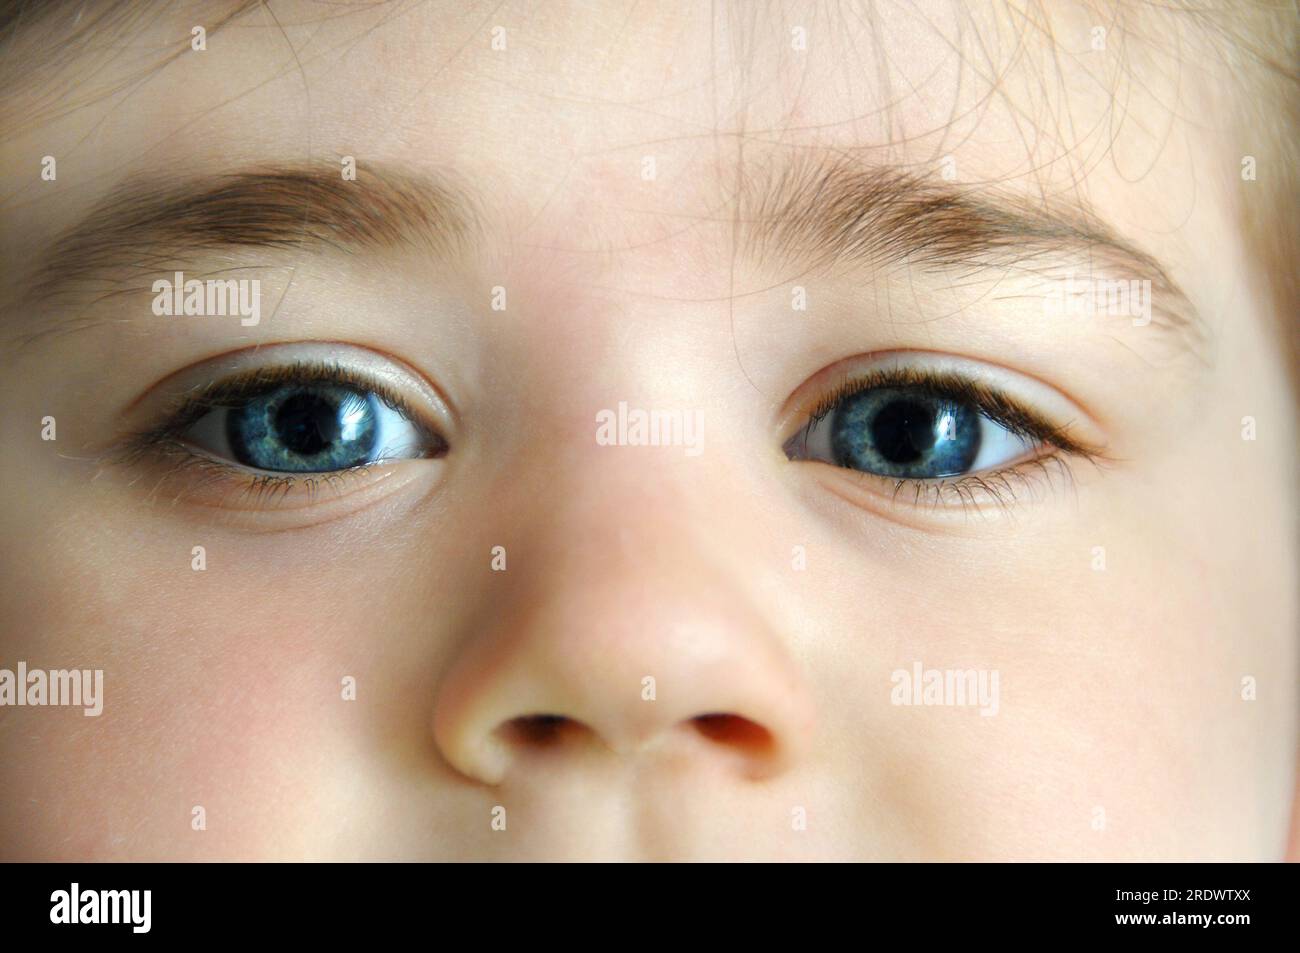 Nahaufnahme des Gesichts eines kleinen Mädchens. Es zeigt ihre blauen Augen auf und ihre Nase. Stockfoto